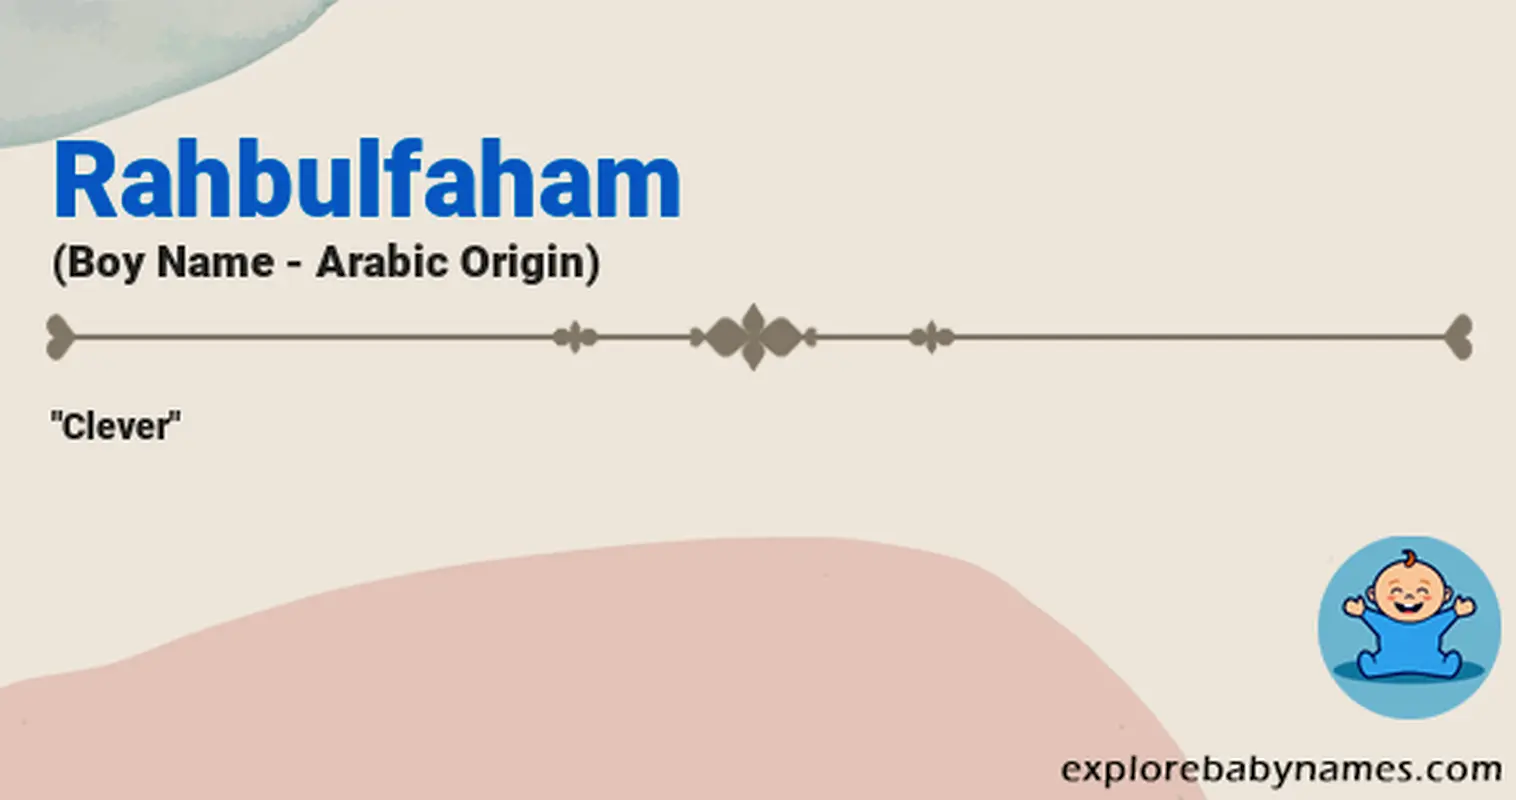 Meaning of Rahbulfaham